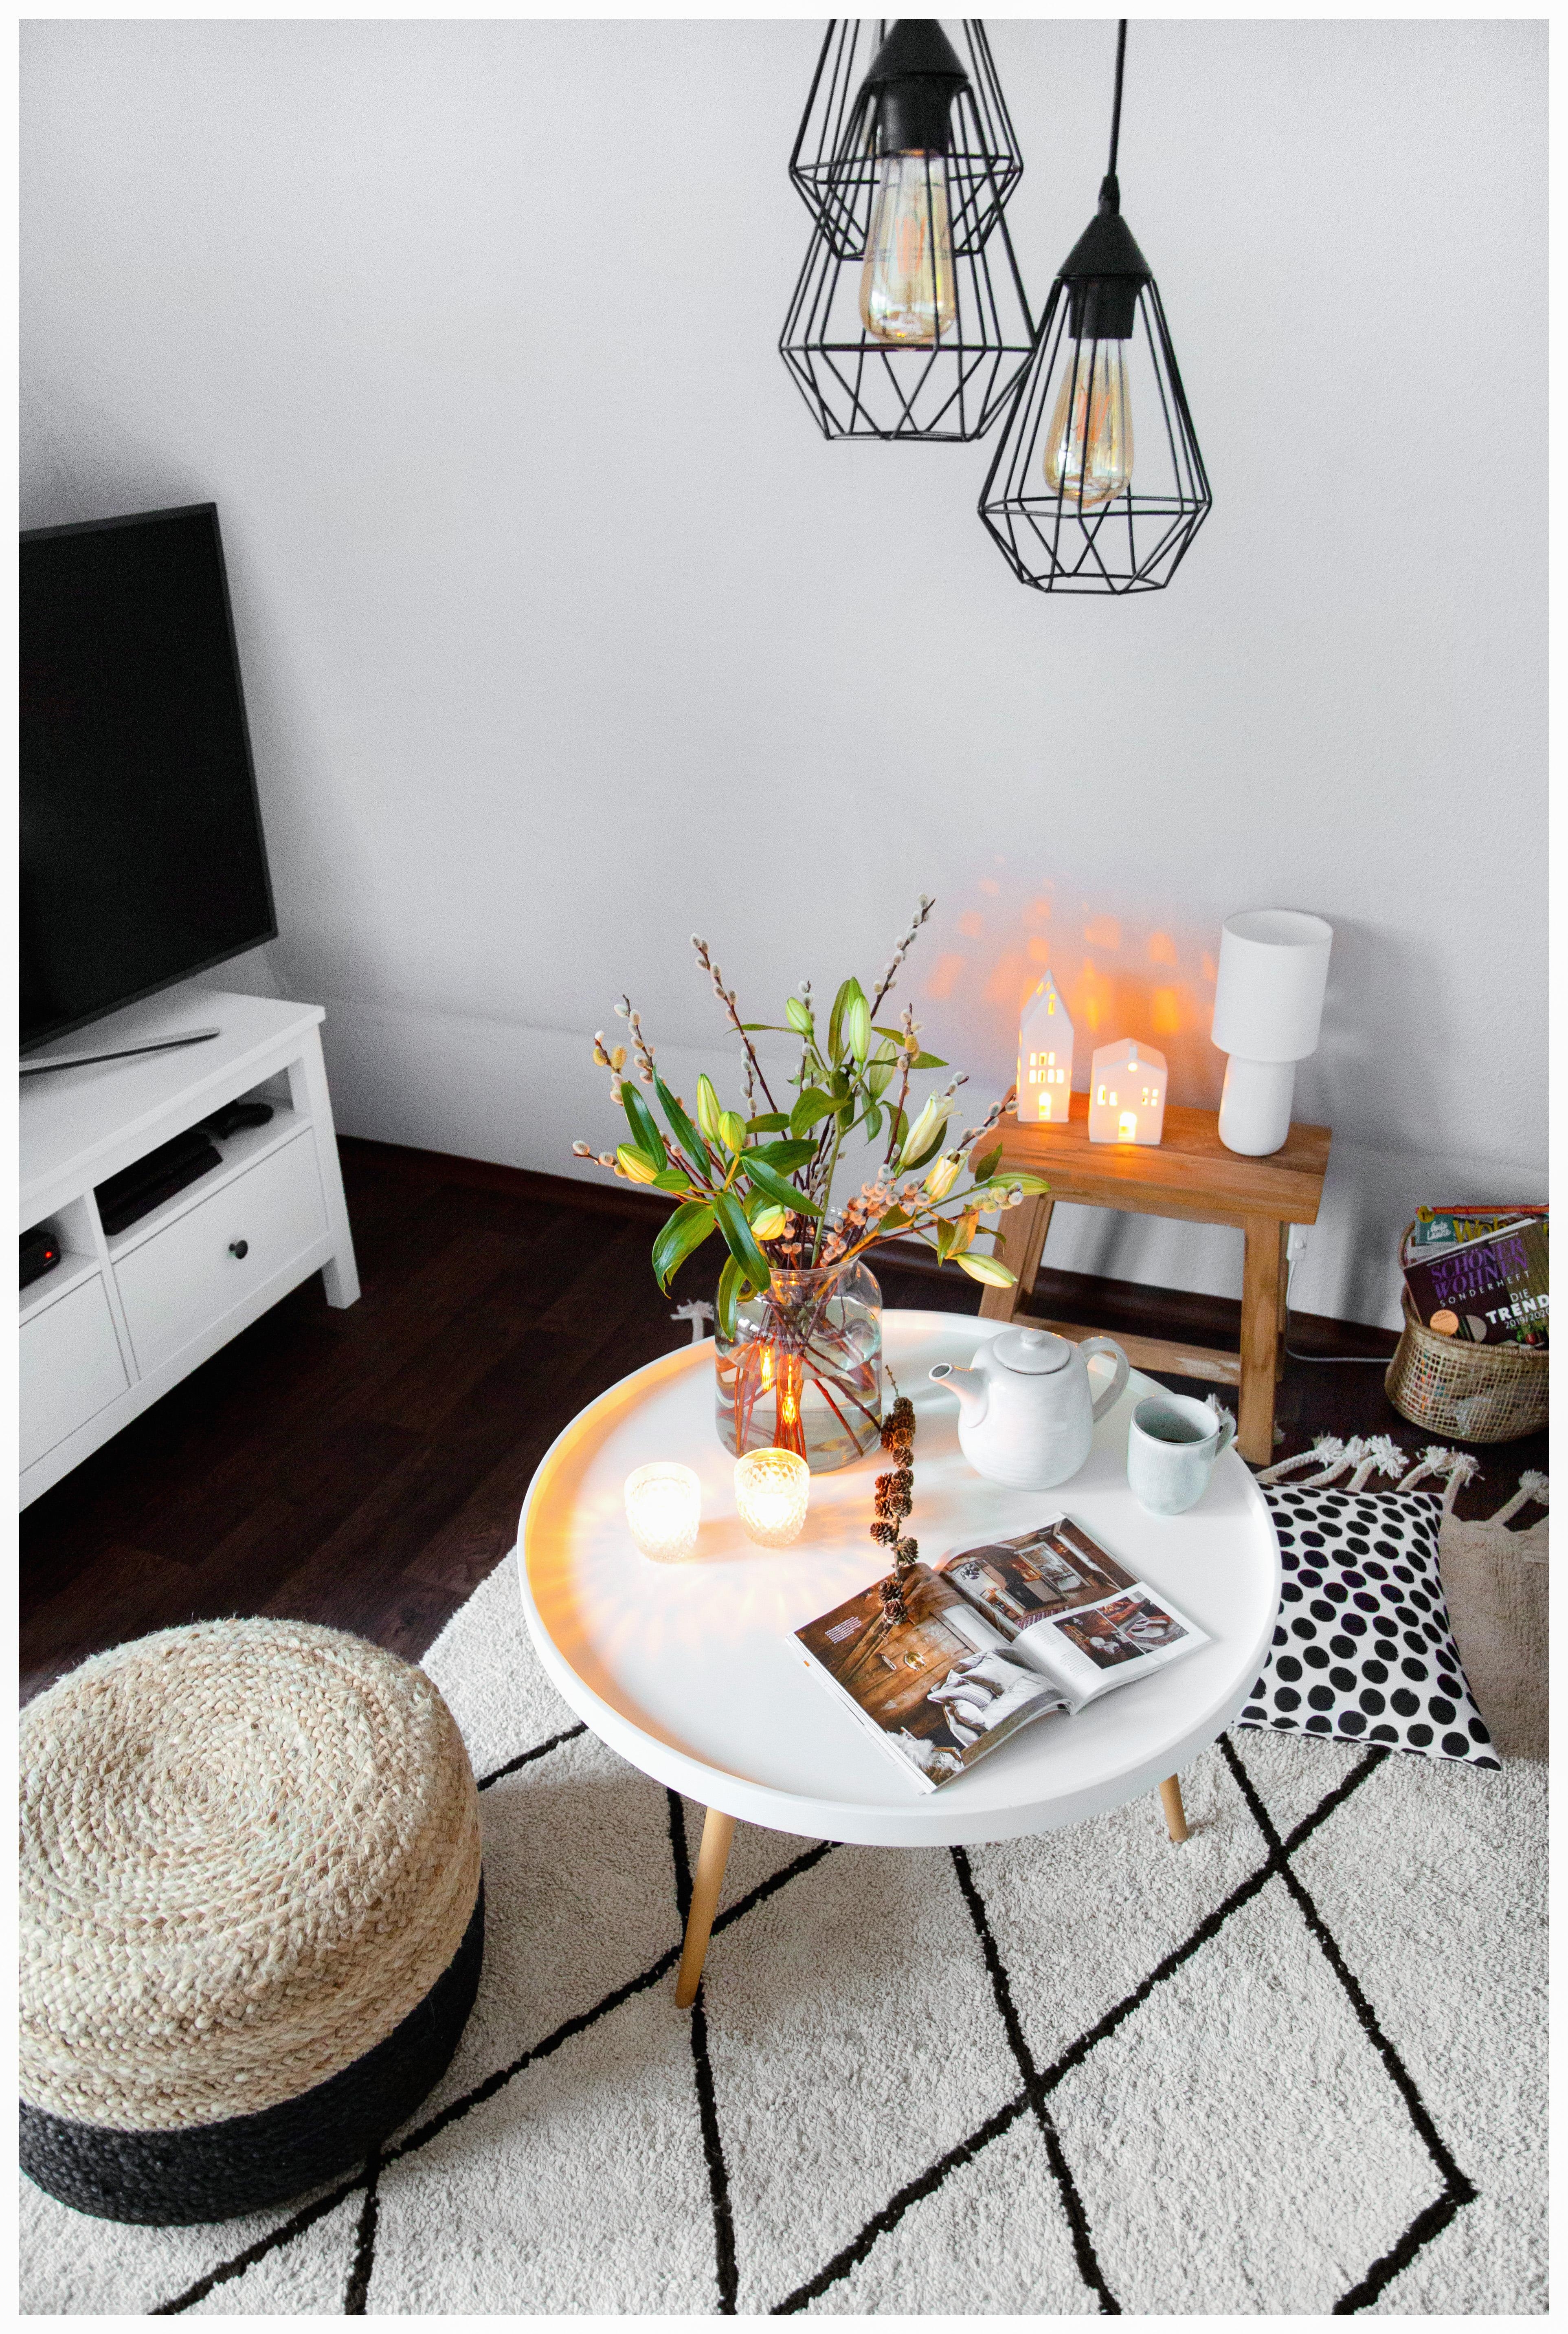 Gemütlichkeit ist so wichtig! Nehmt euch die Zeit! #cozy #wohnzimmer #gemütlich #interior #kerzen 